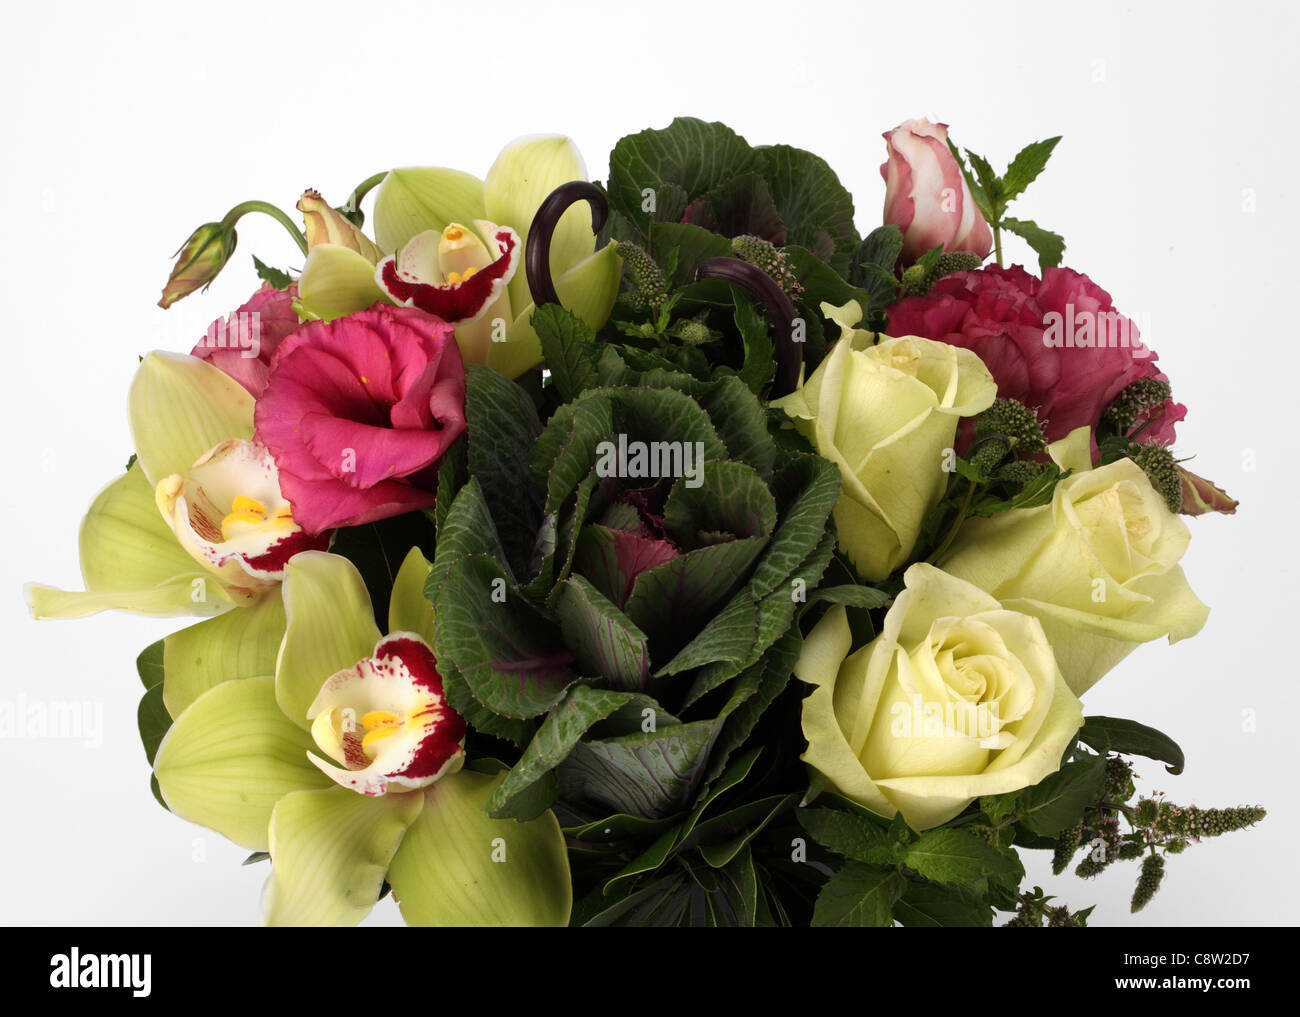 Eine Nahaufnahme von einem bunten Blumenstrauß. Zier-Kohl, weiße Rosen, Cymbidium Orchideen, rosa Pfingstrosen Stockfoto